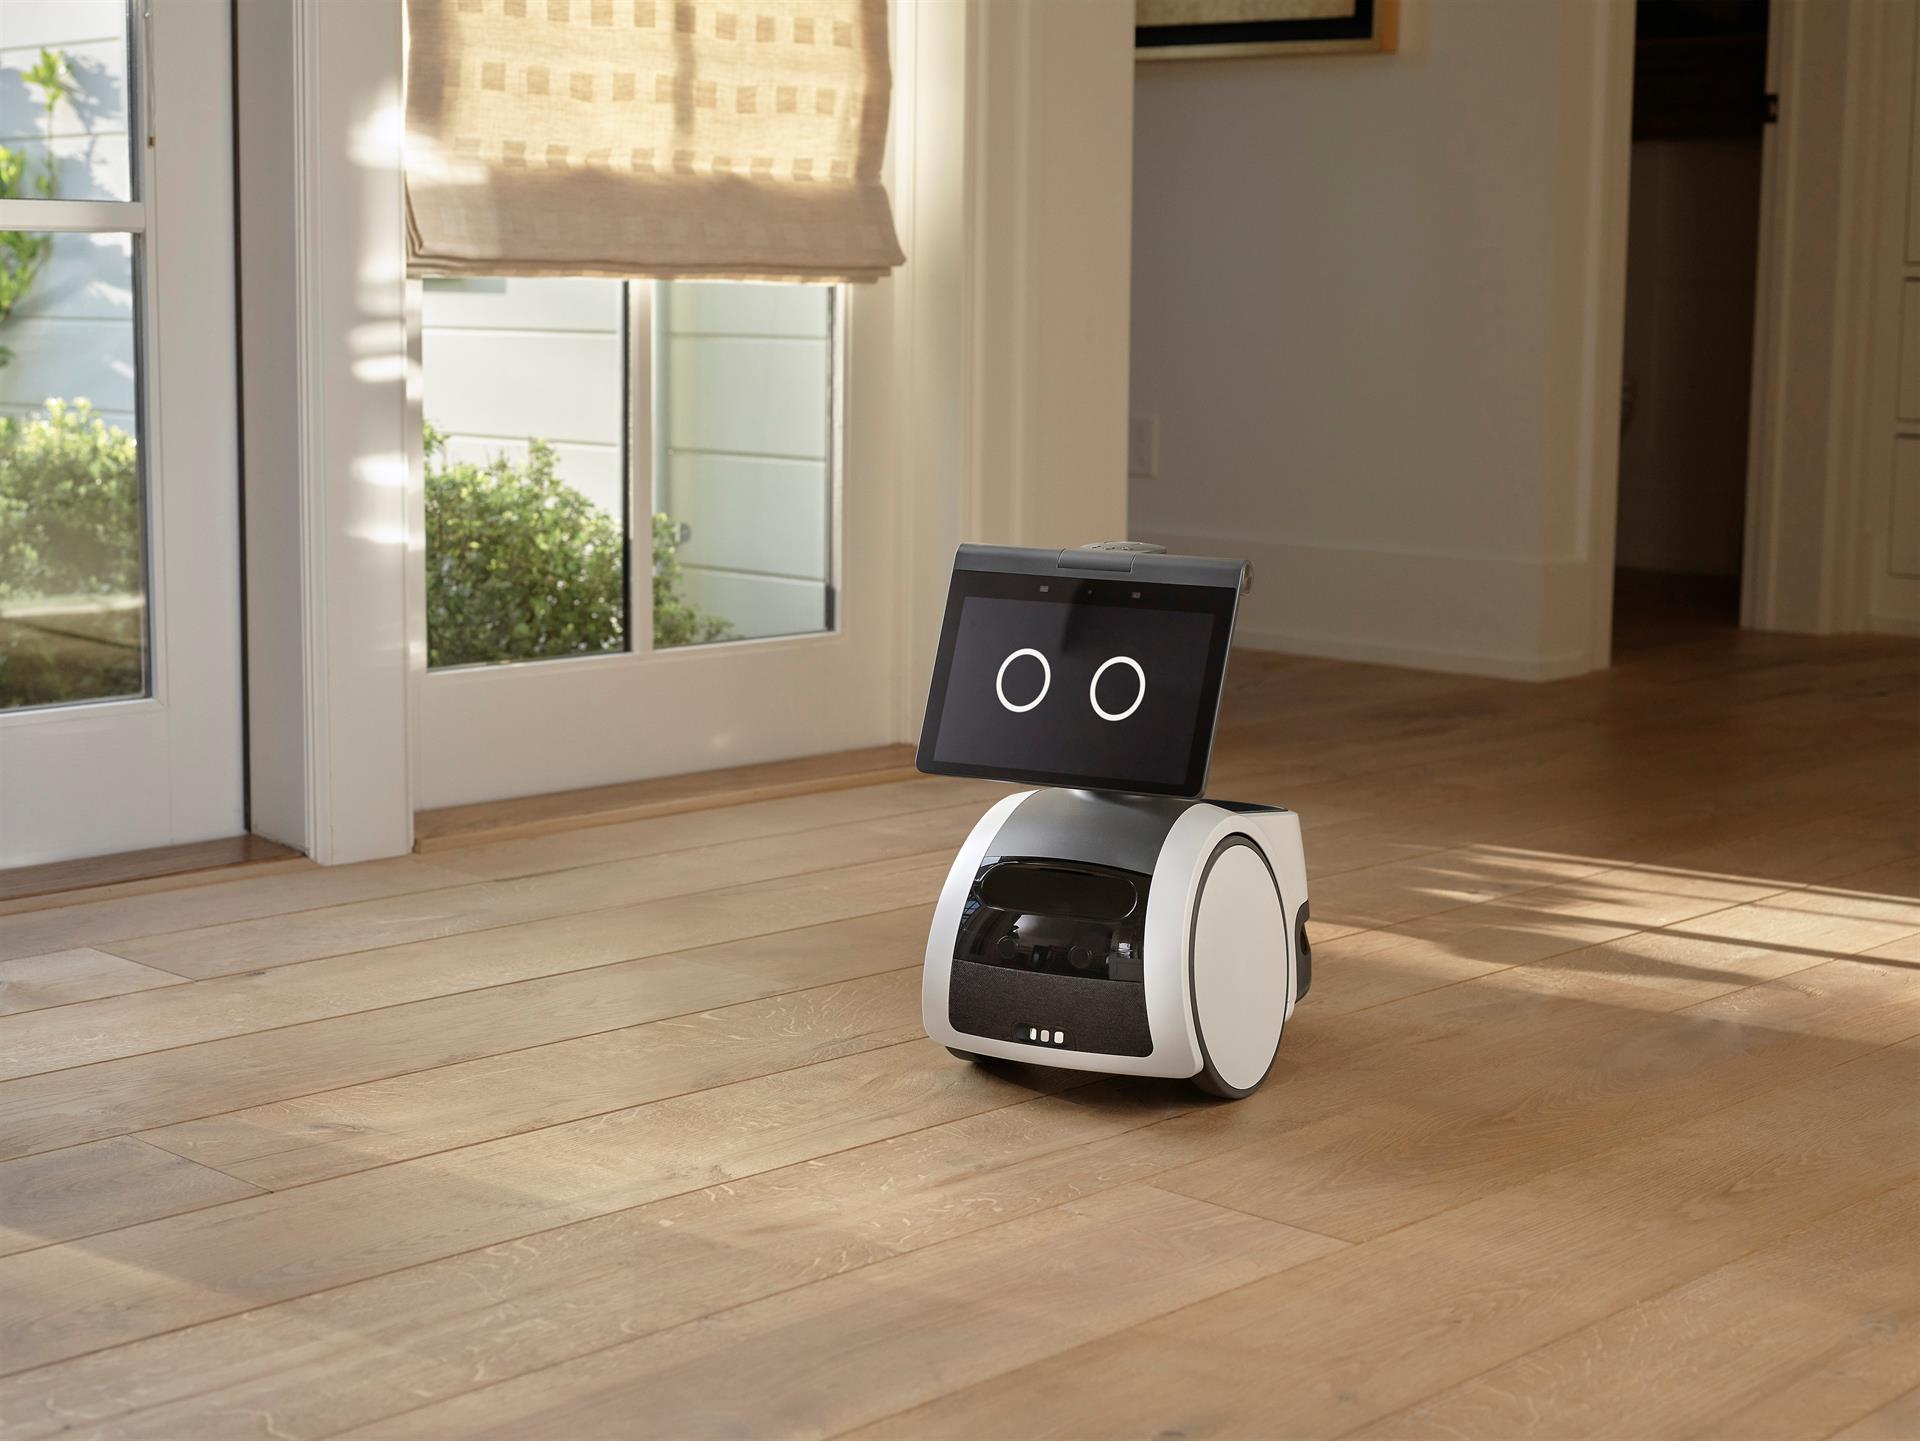 Robot Astro mientras pasea en la sala de un hogar, piso de madera.